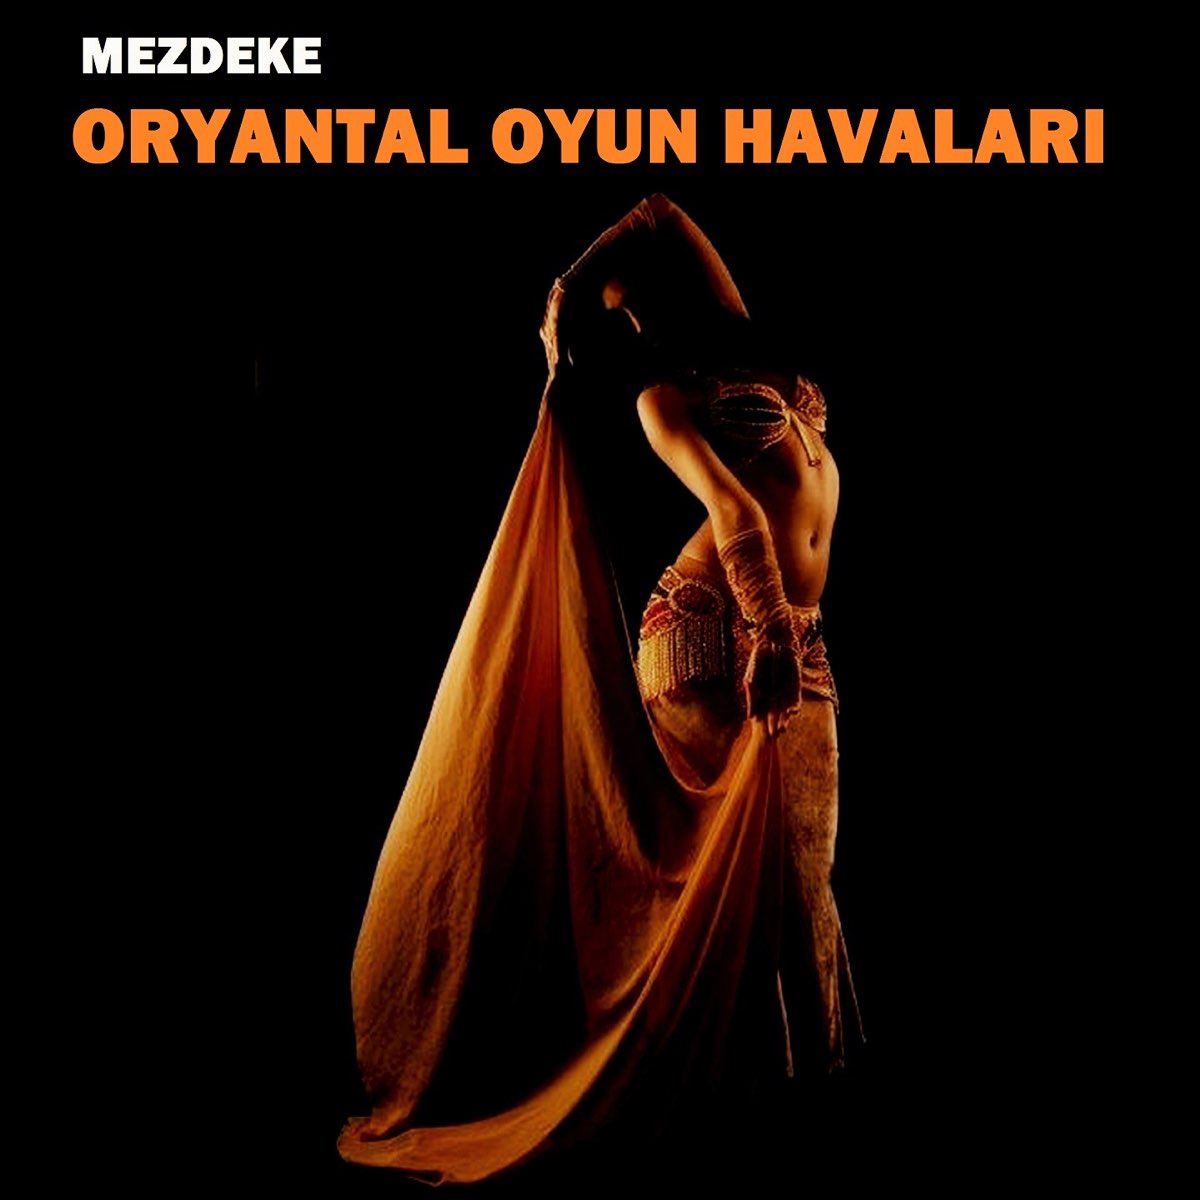 Mezdeke Oryantal Oyun Havaları - Album by Md Stüdyo Orkestrası - Apple Music